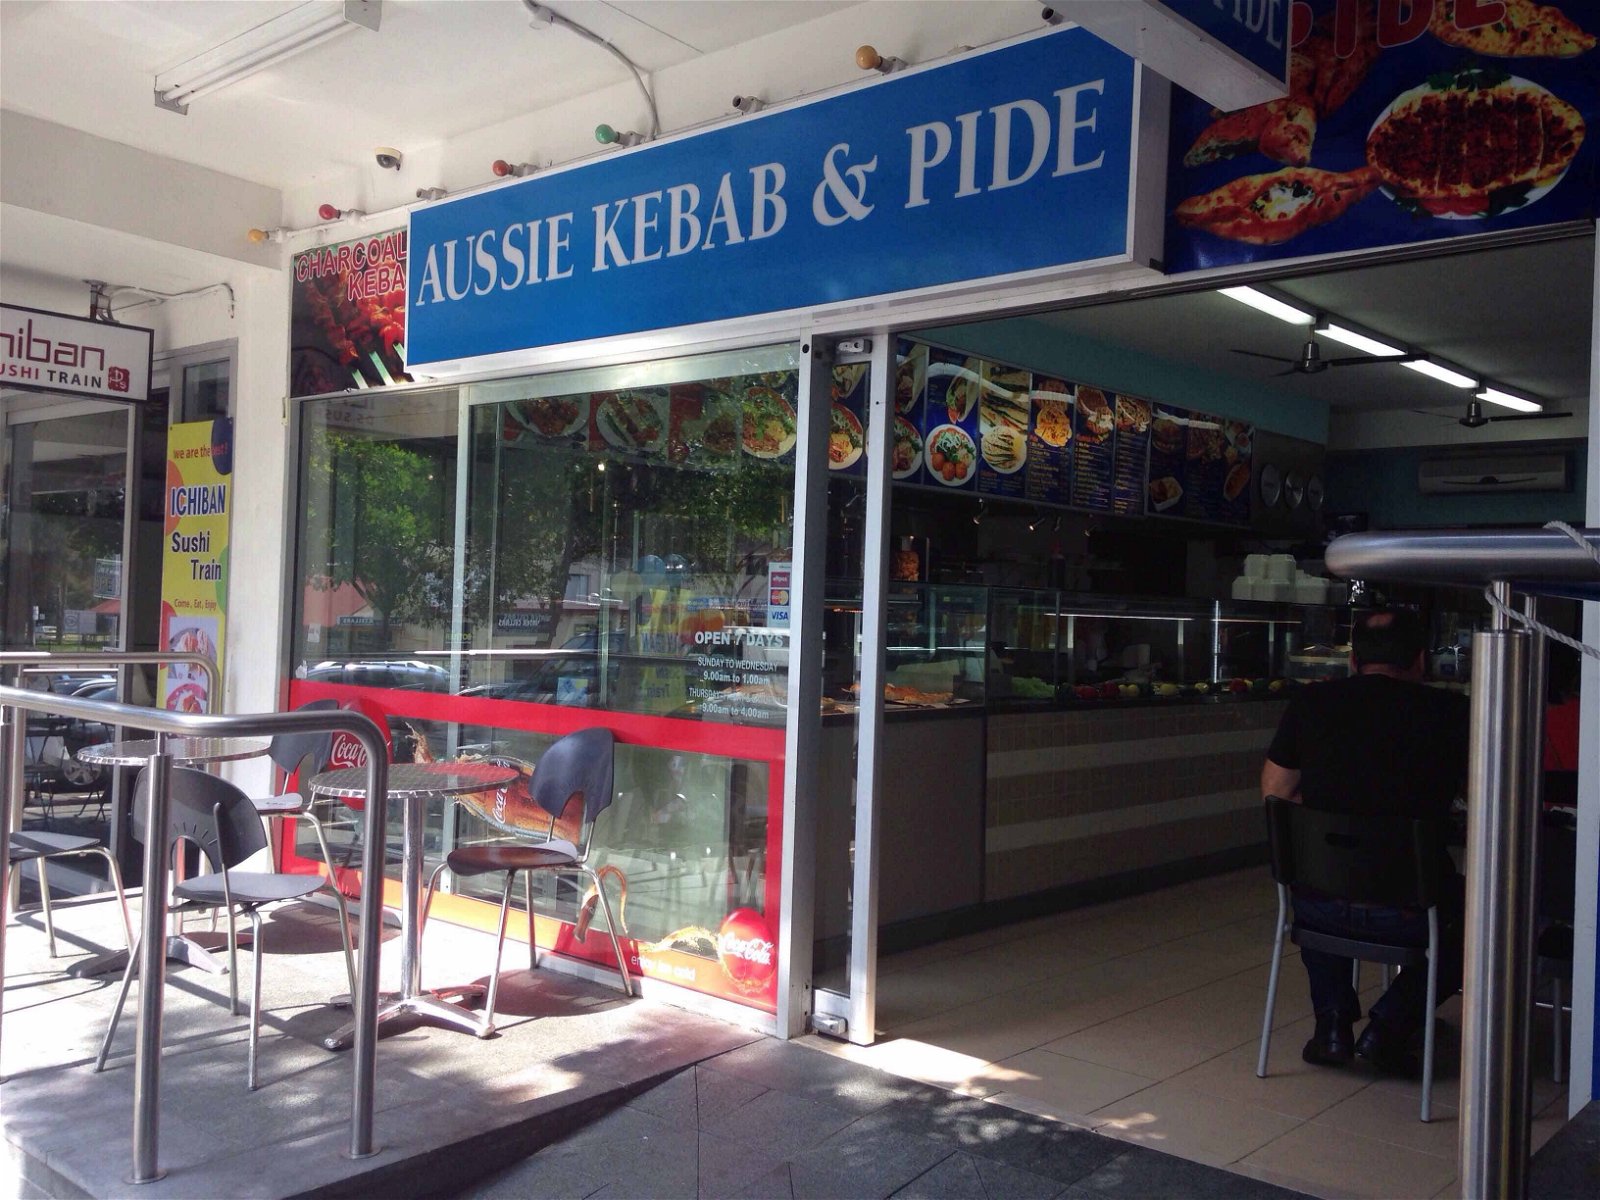 Aussie Kebab  Pide - Tourism TAS